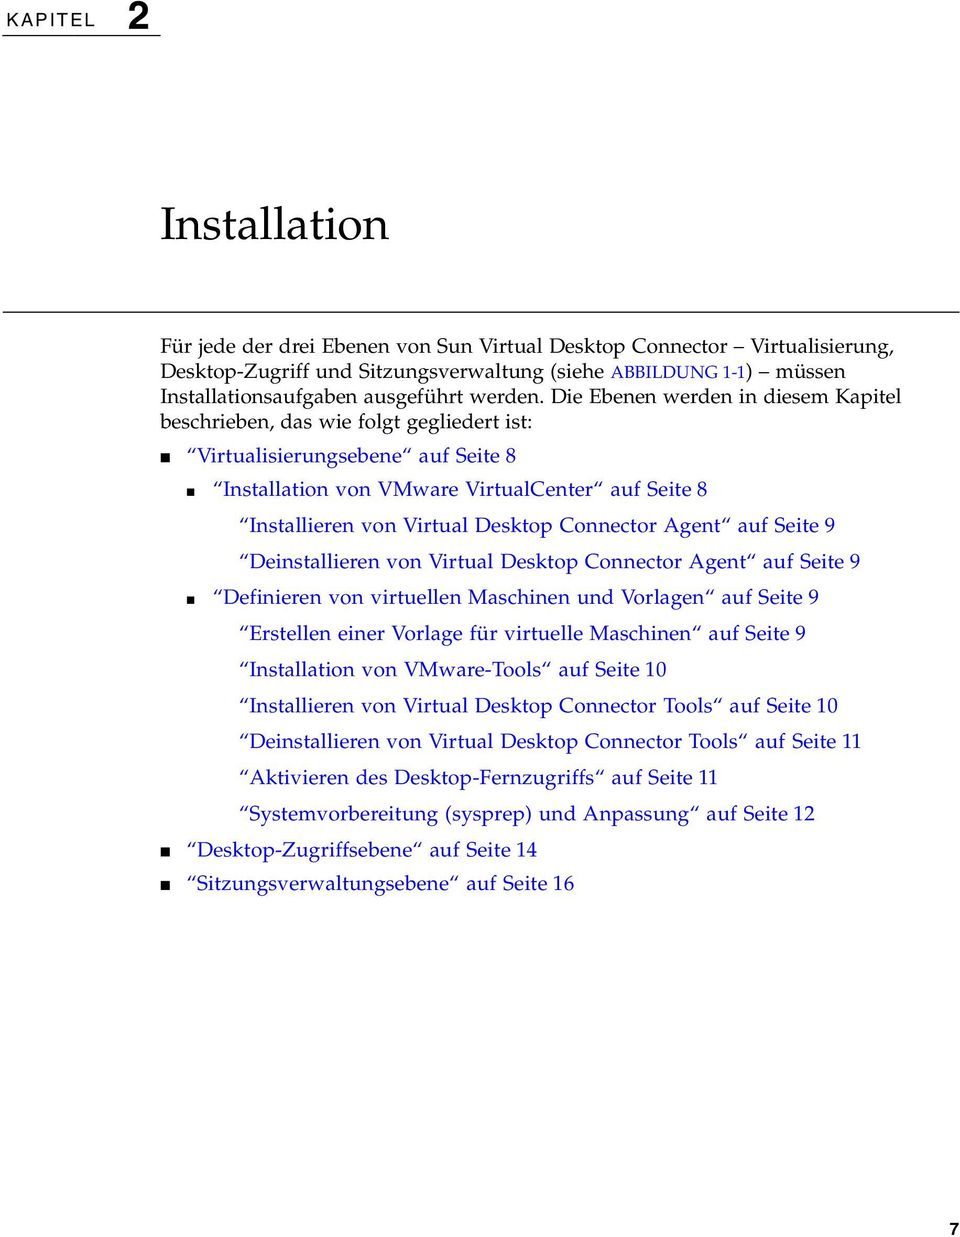 Die Ebenen werden in diesem Kapitel beschrieben, das wie folgt gegliedert ist: Virtualisierungsebene auf Seite 8 Installation von VMware VirtualCenter auf Seite 8 Installieren von Virtual Desktop